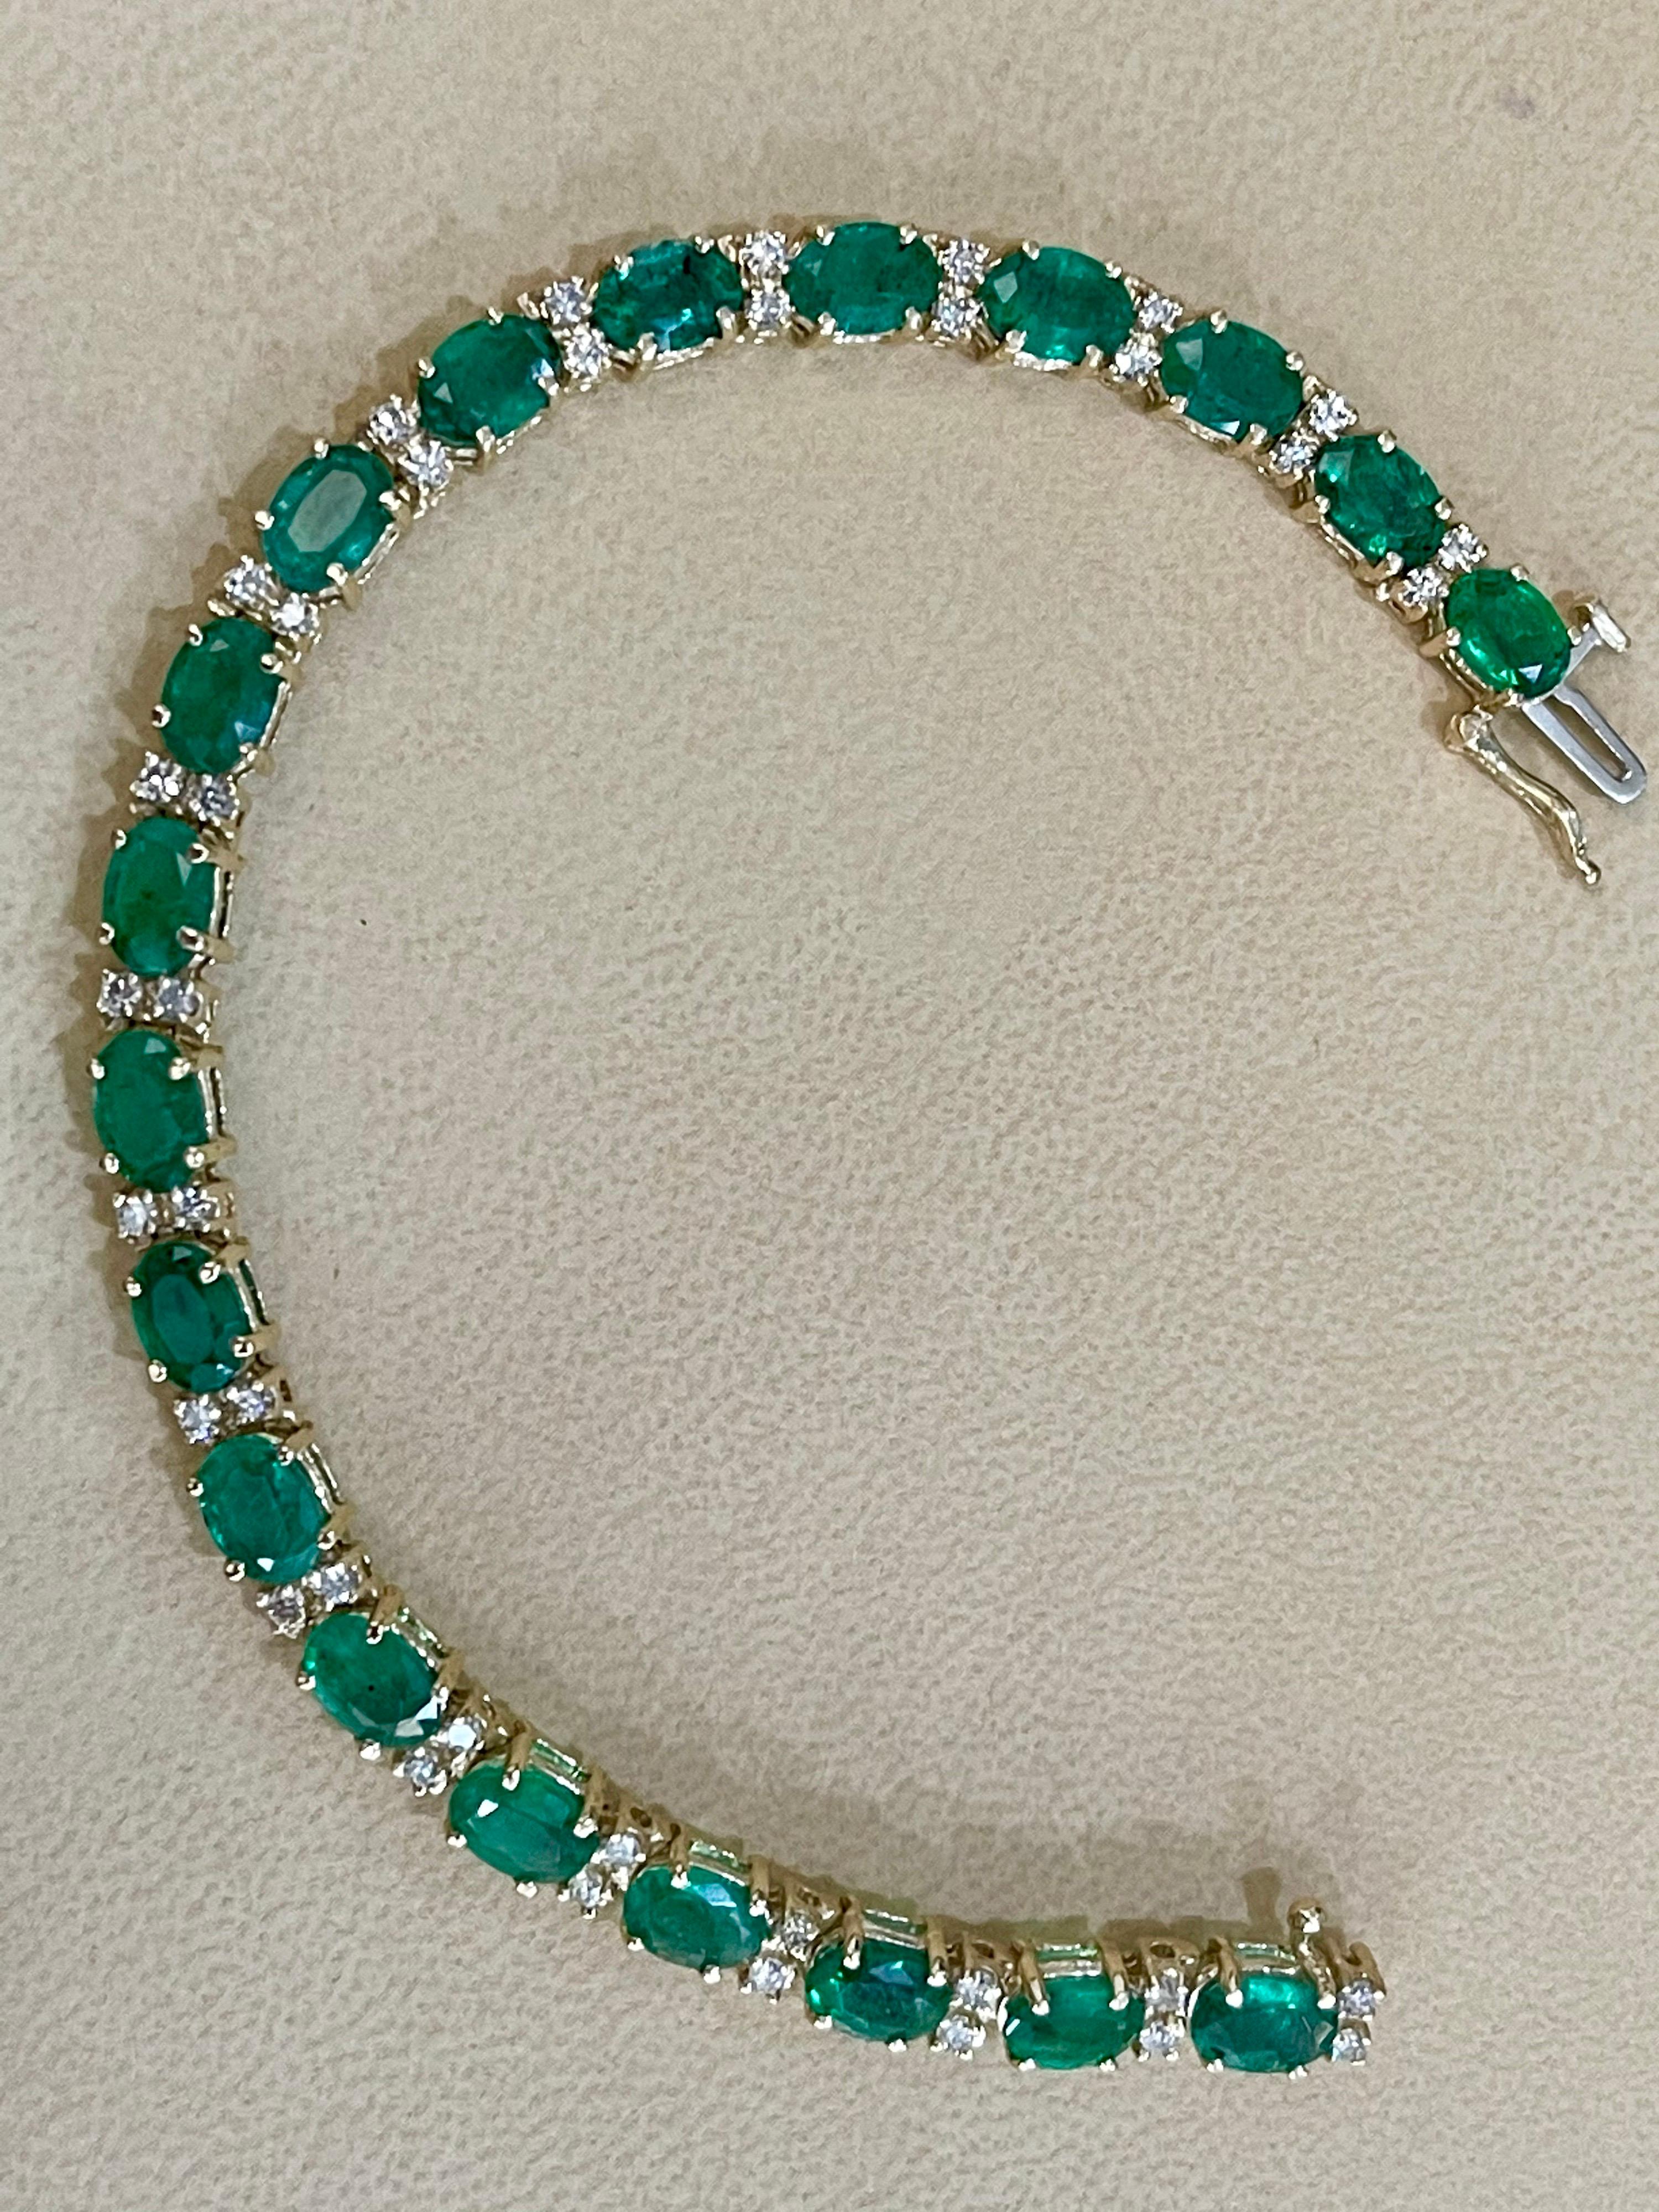 15 Carat Natural Emerald & Diamond Cocktail Tennis Bracelet 14 Karat Yellow Gold 10